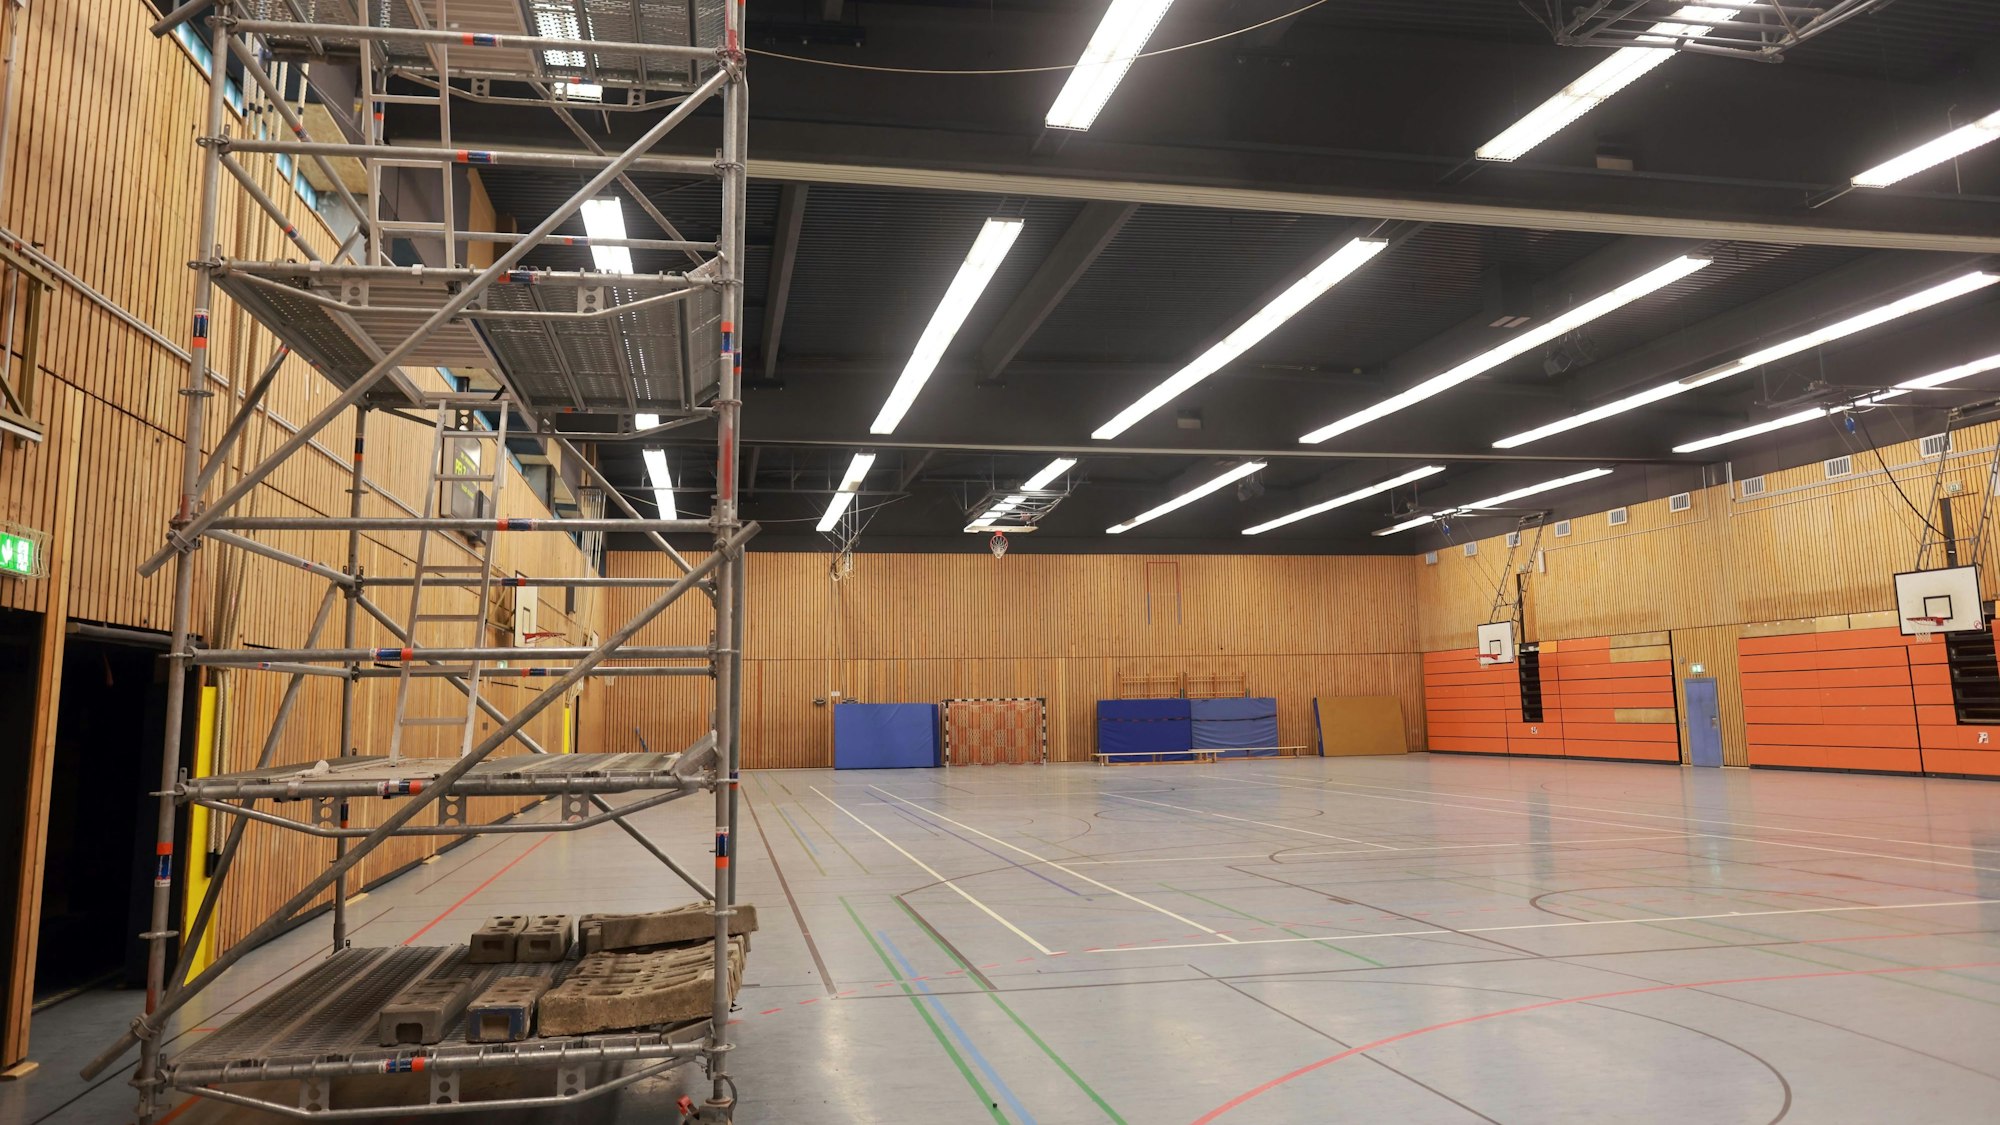 Gerüste stehen in der Turnhalle der Heinrich-Böll-Gesamtschule in Chorweiler, die einsturzgefährdet ist.